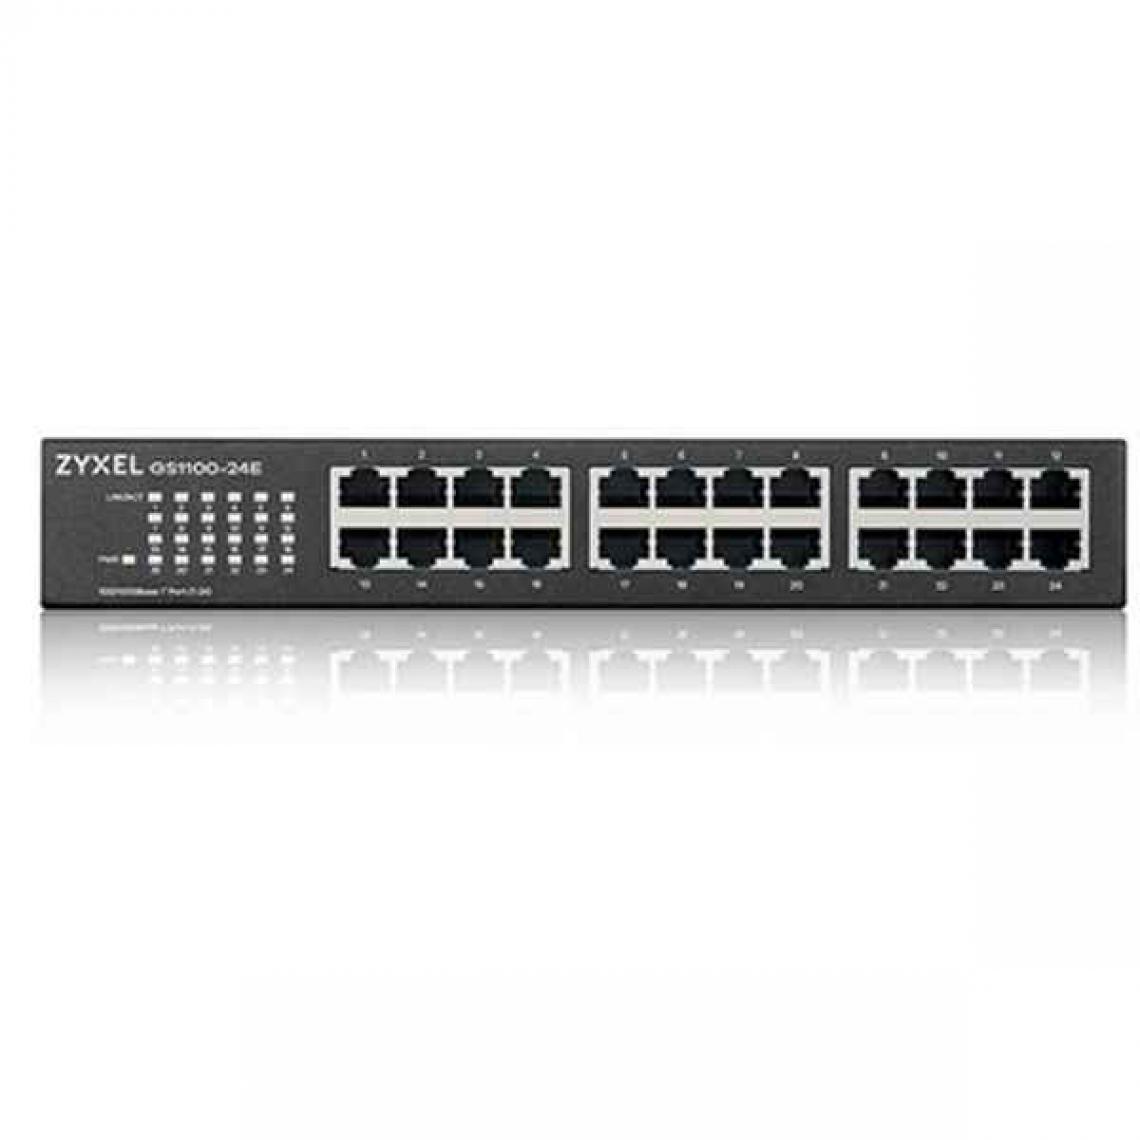 Zyxel - Switch ZyXEL GS1100-24E-EU0103F RJ45 x 24 Ethernet LAN 10/100 Mbps - Switch